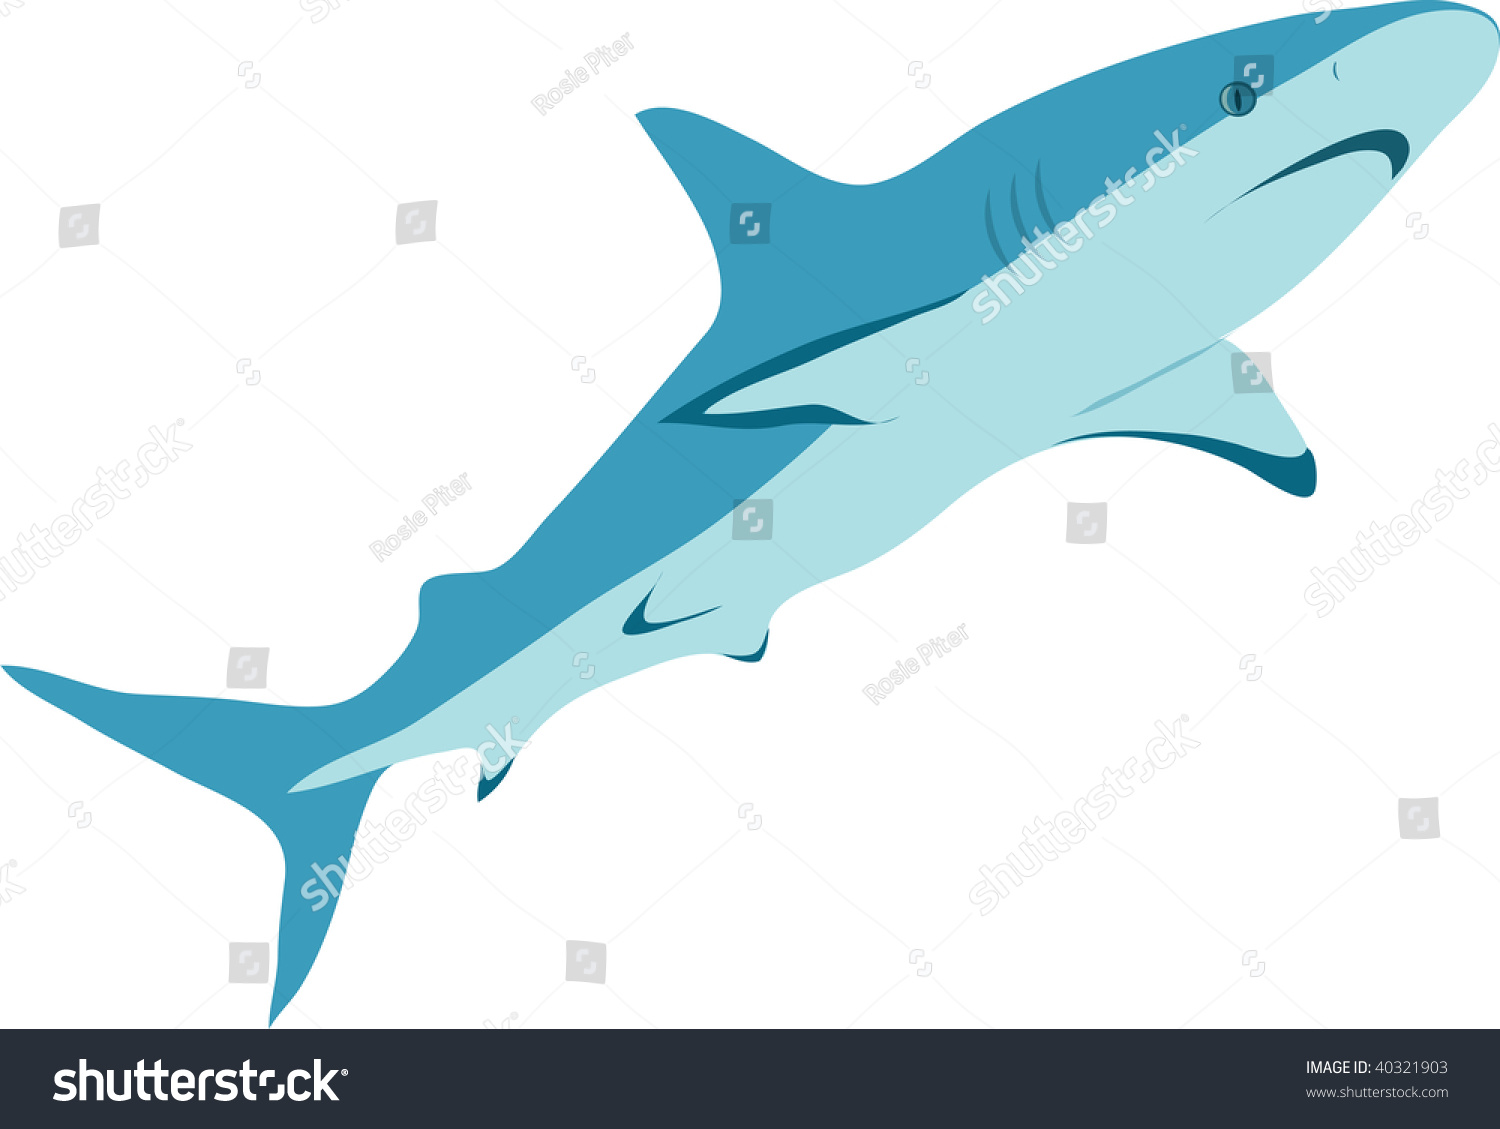 Clip Art Illustration Of A Shark. - 40321903 : Shutterstock